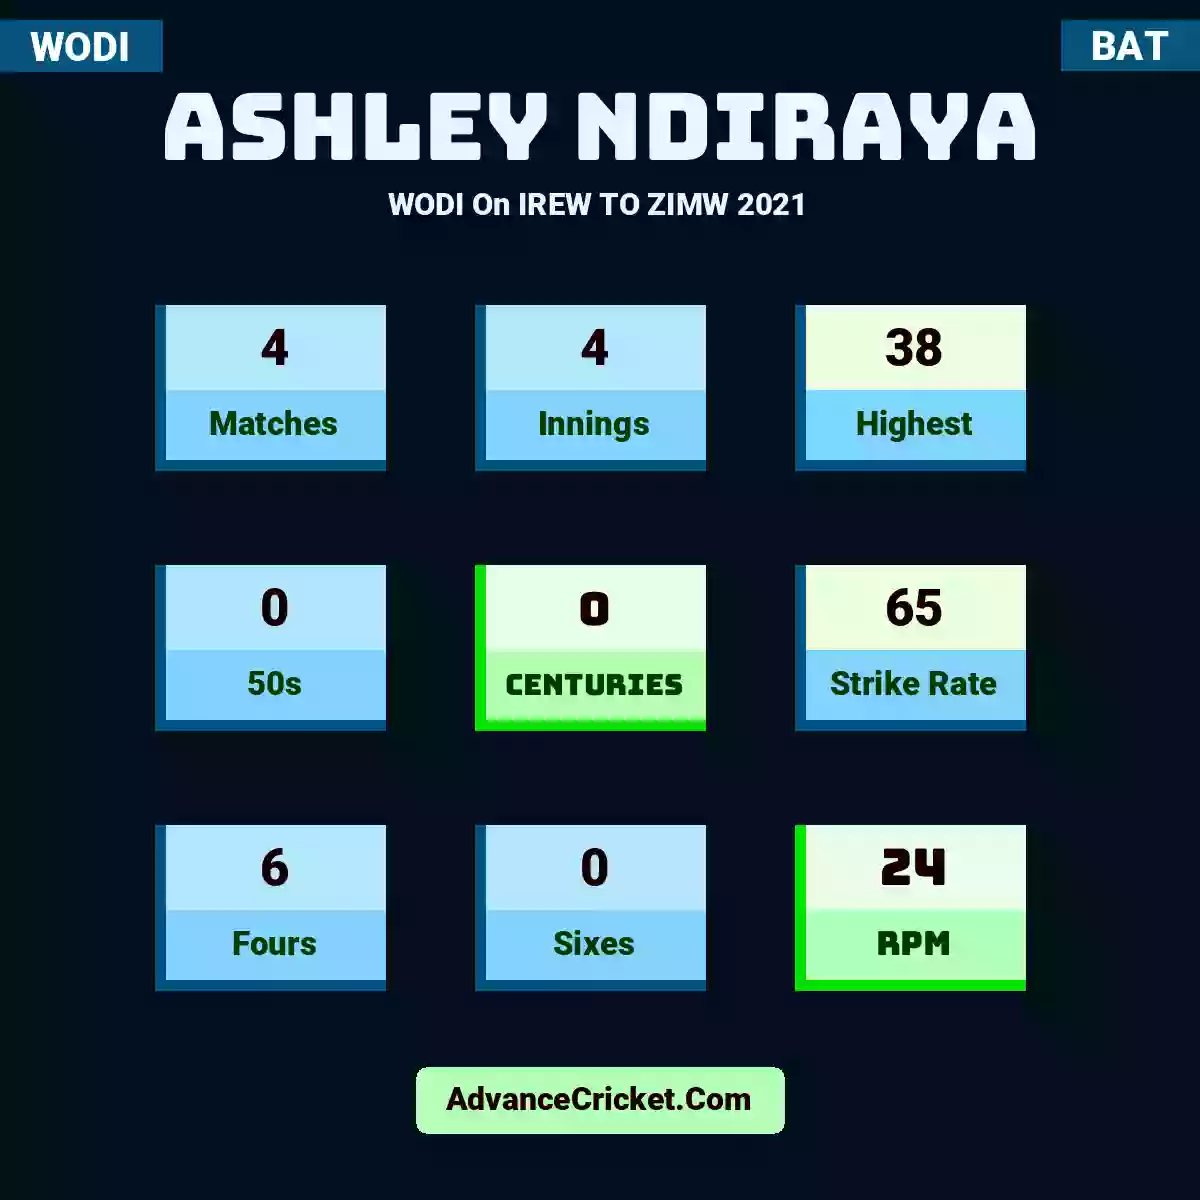 Ashley Ndiraya WODI  On IREW TO ZIMW 2021, Ashley Ndiraya played 4 matches, scored 38 runs as highest, 0 half-centuries, and 0 centuries, with a strike rate of 65. A.Ndiraya hit 6 fours and 0 sixes, with an RPM of 24.